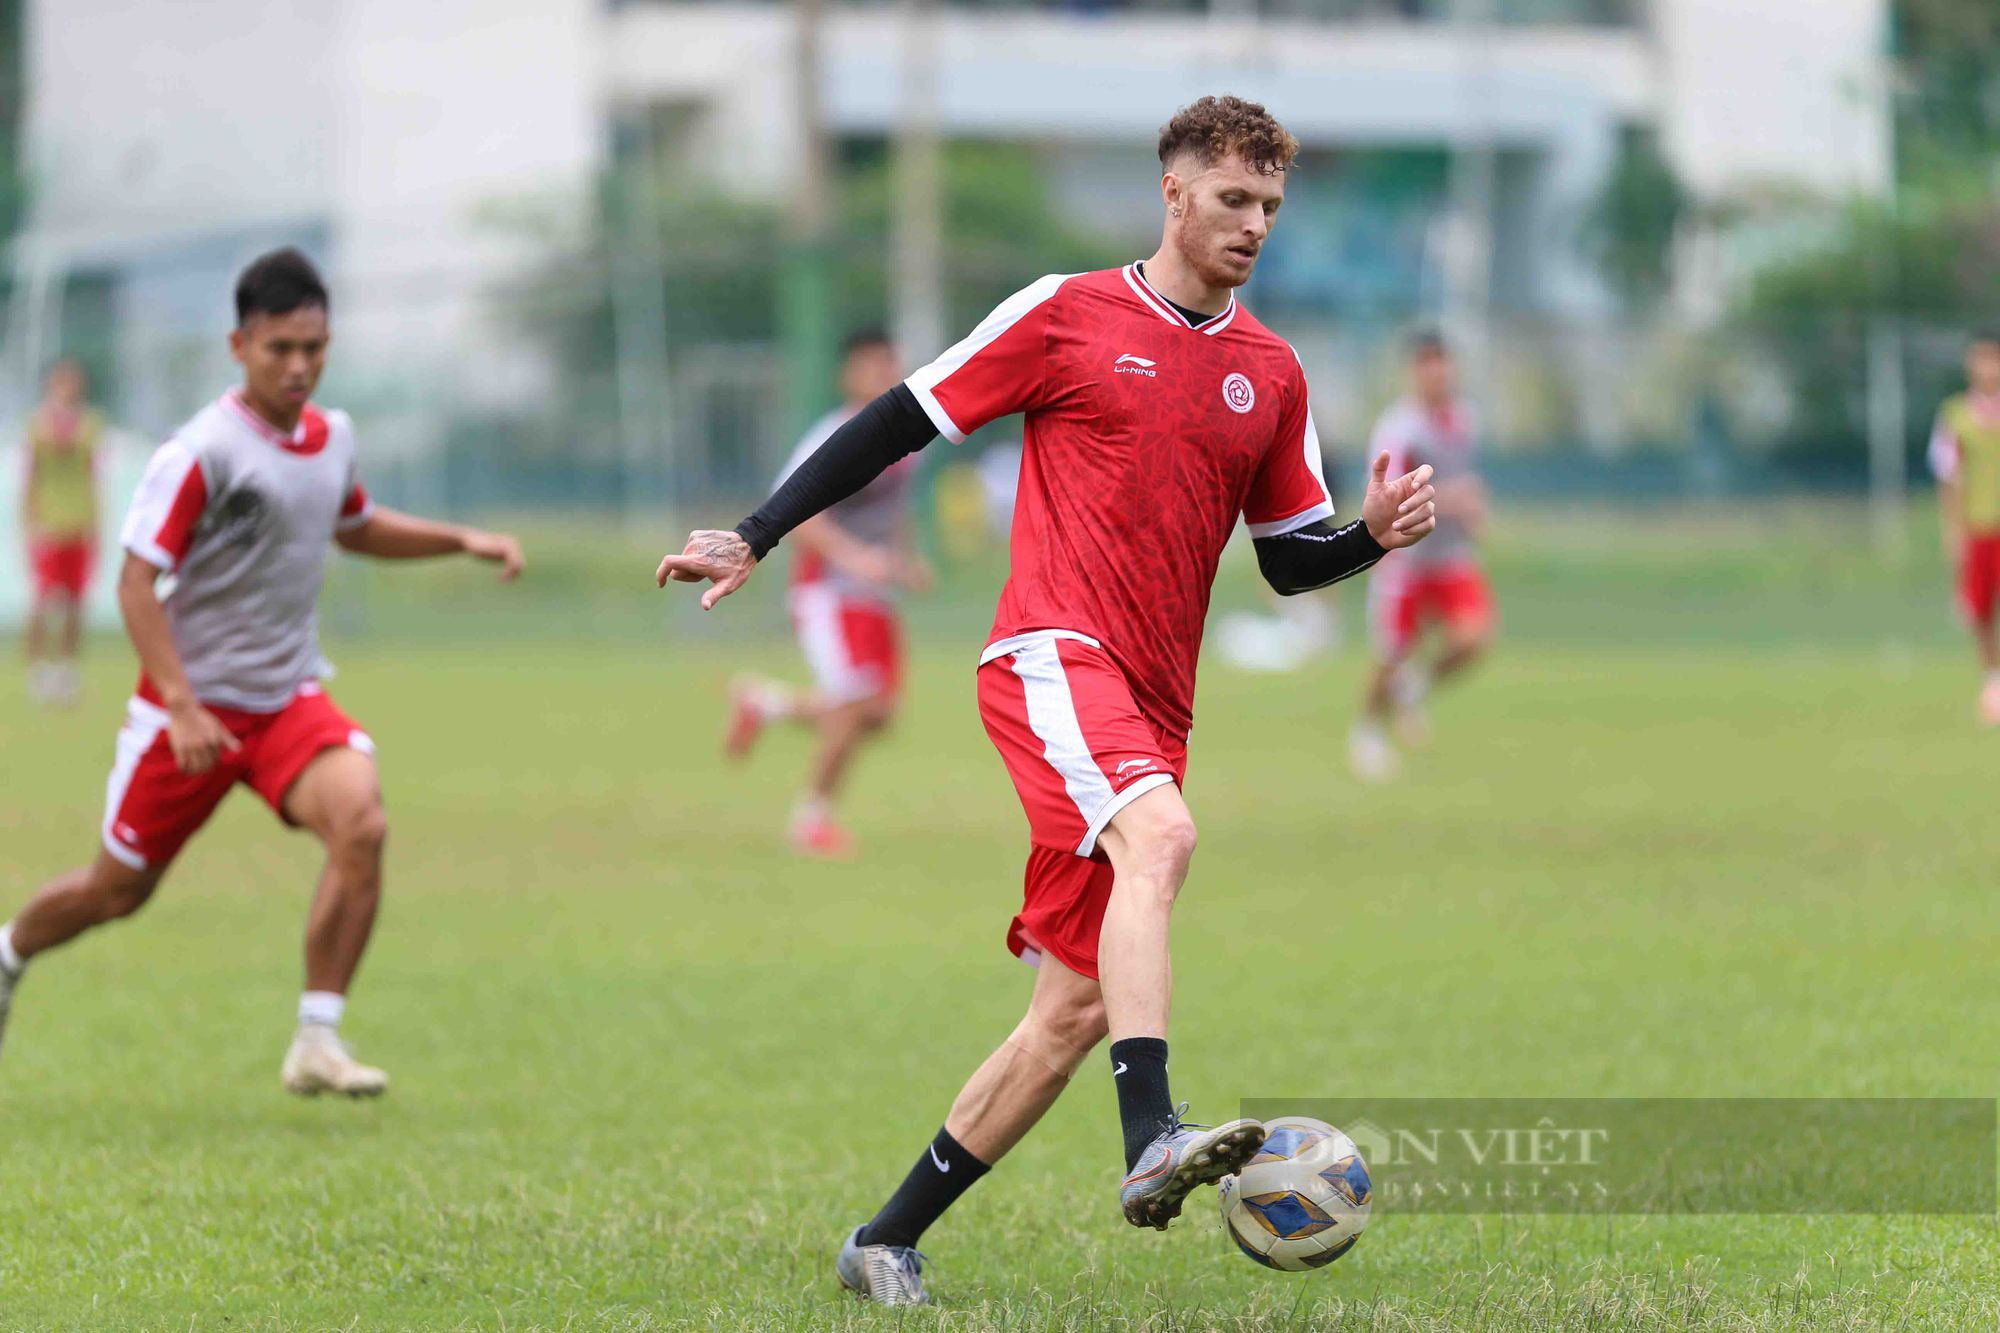 Thanh Bình &quot;thua kèo&quot; Danh Trung trong buổi tập đầu tiên tại TP.HCM chuẩn bị AFC Cup 2022  - Ảnh 13.